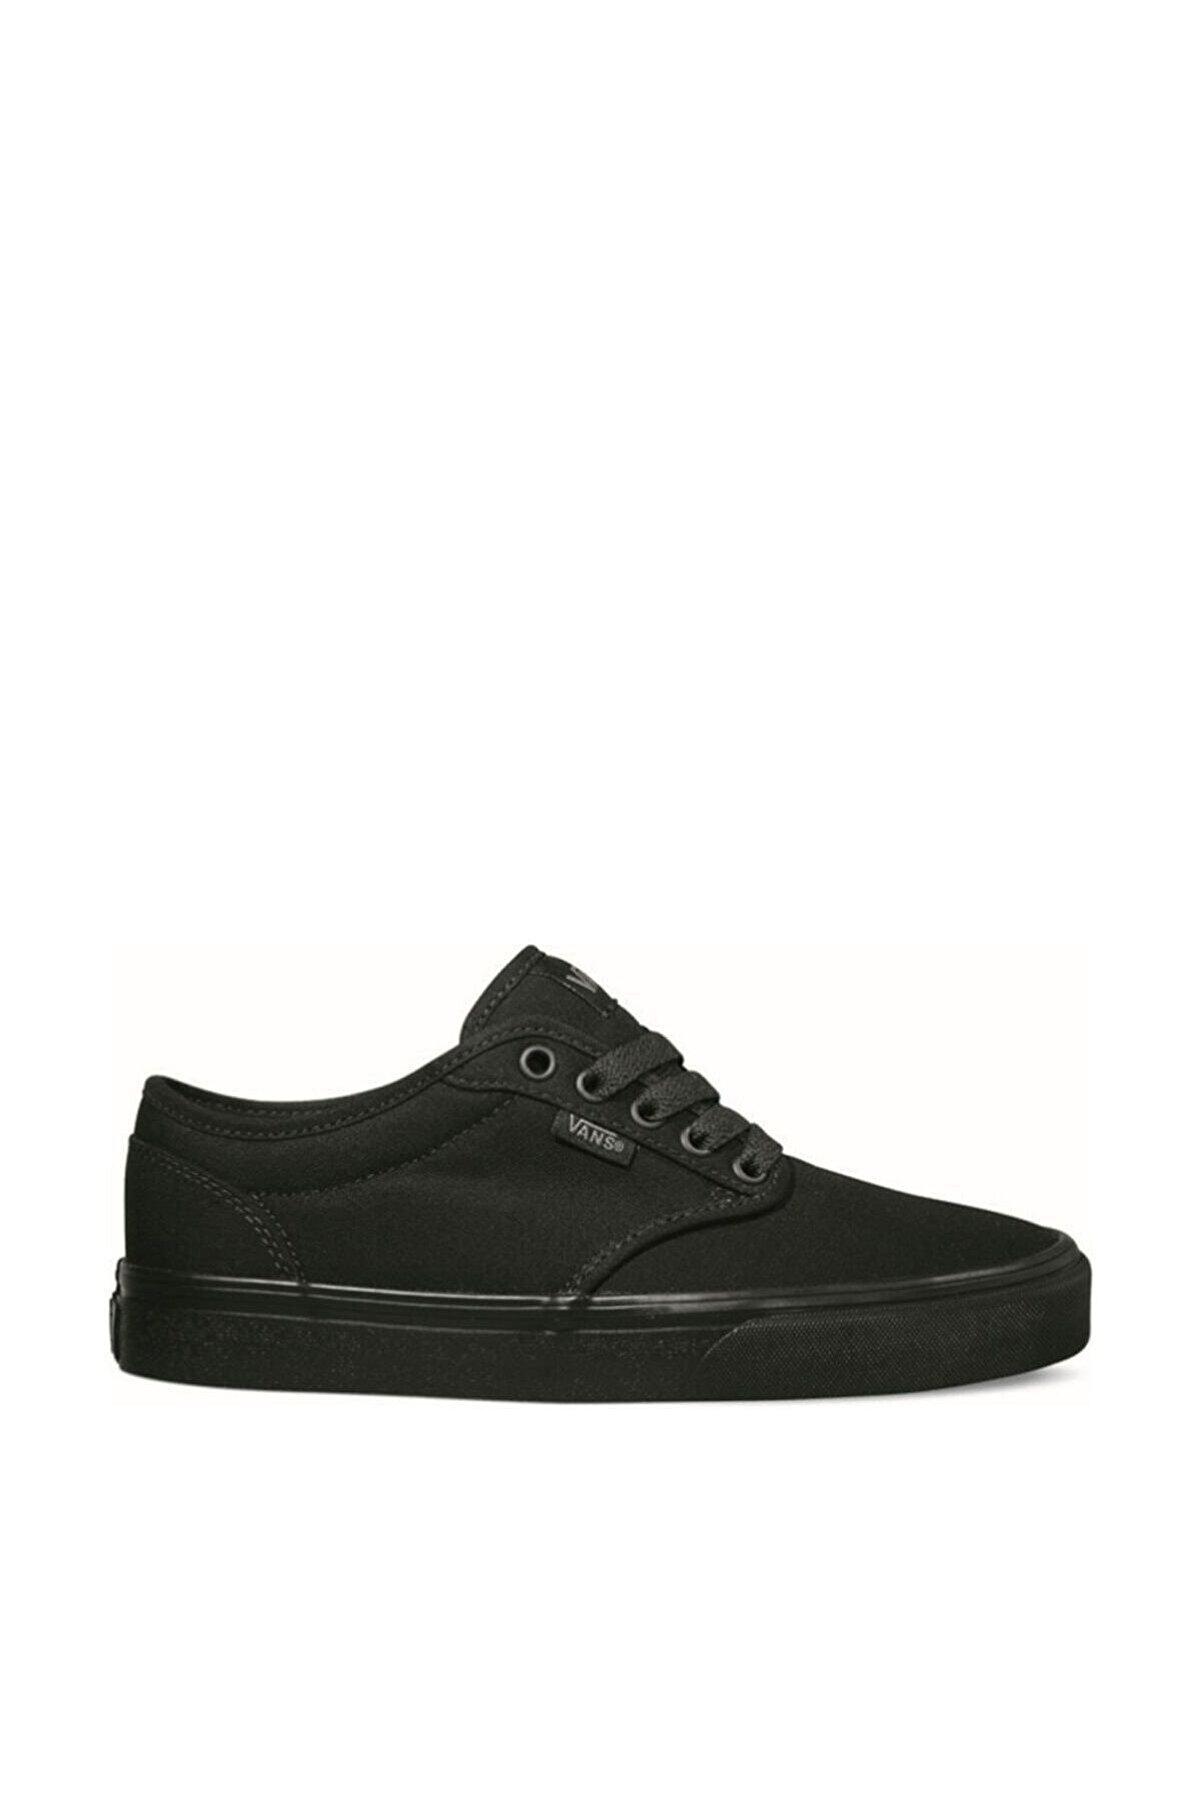 Vans Atwood Siyah Erkek Sneaker Ayakkabı 100394192